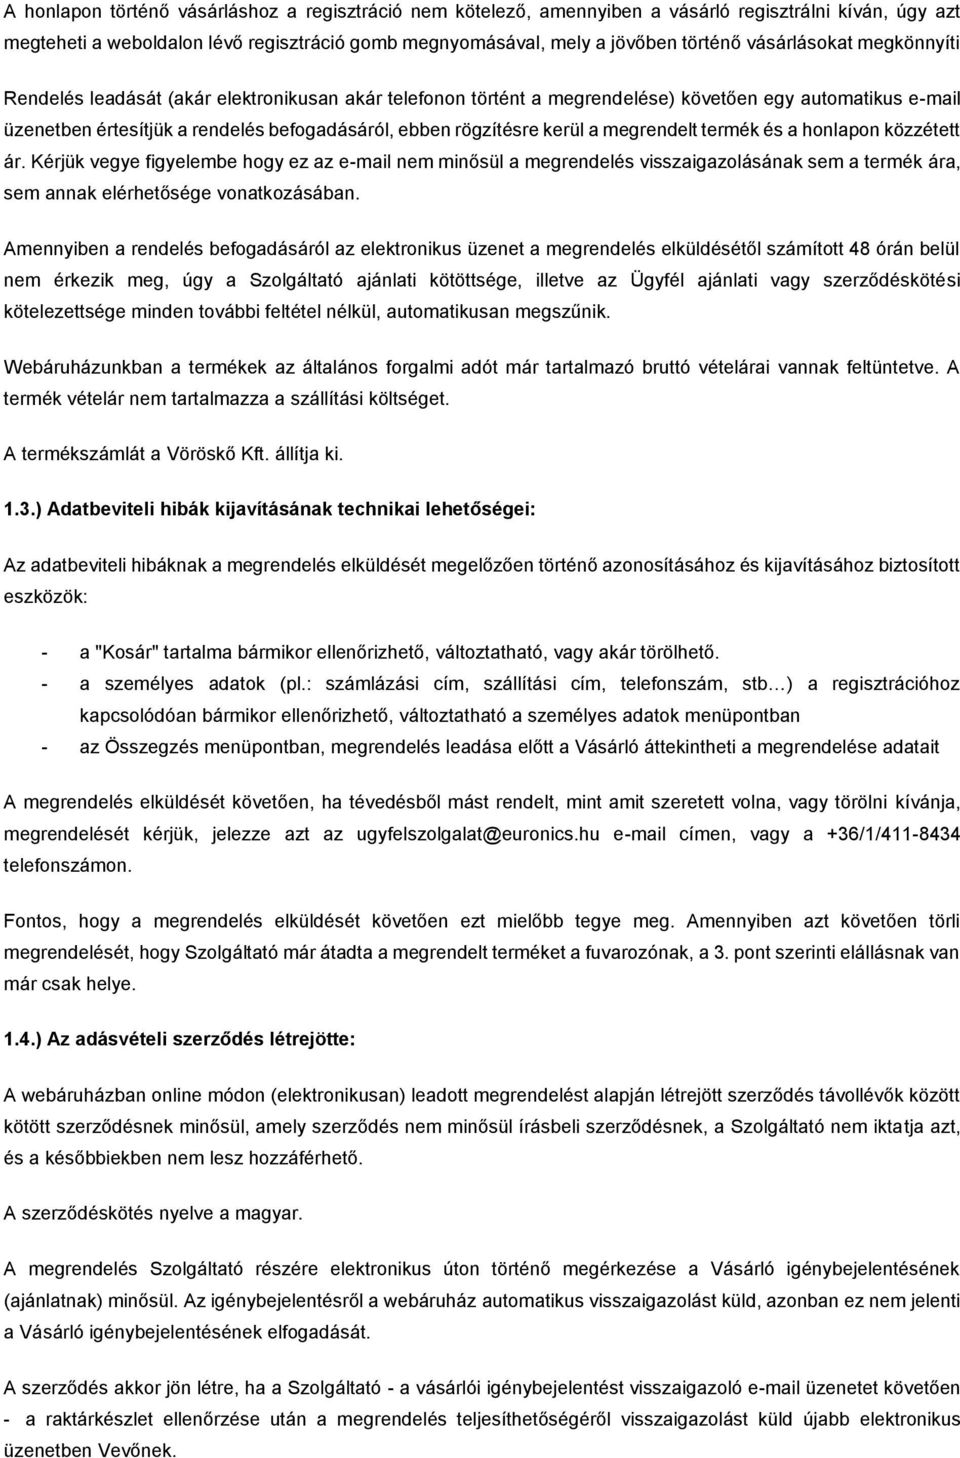 Általános szerződési feltételek - PDF Ingyenes letöltés